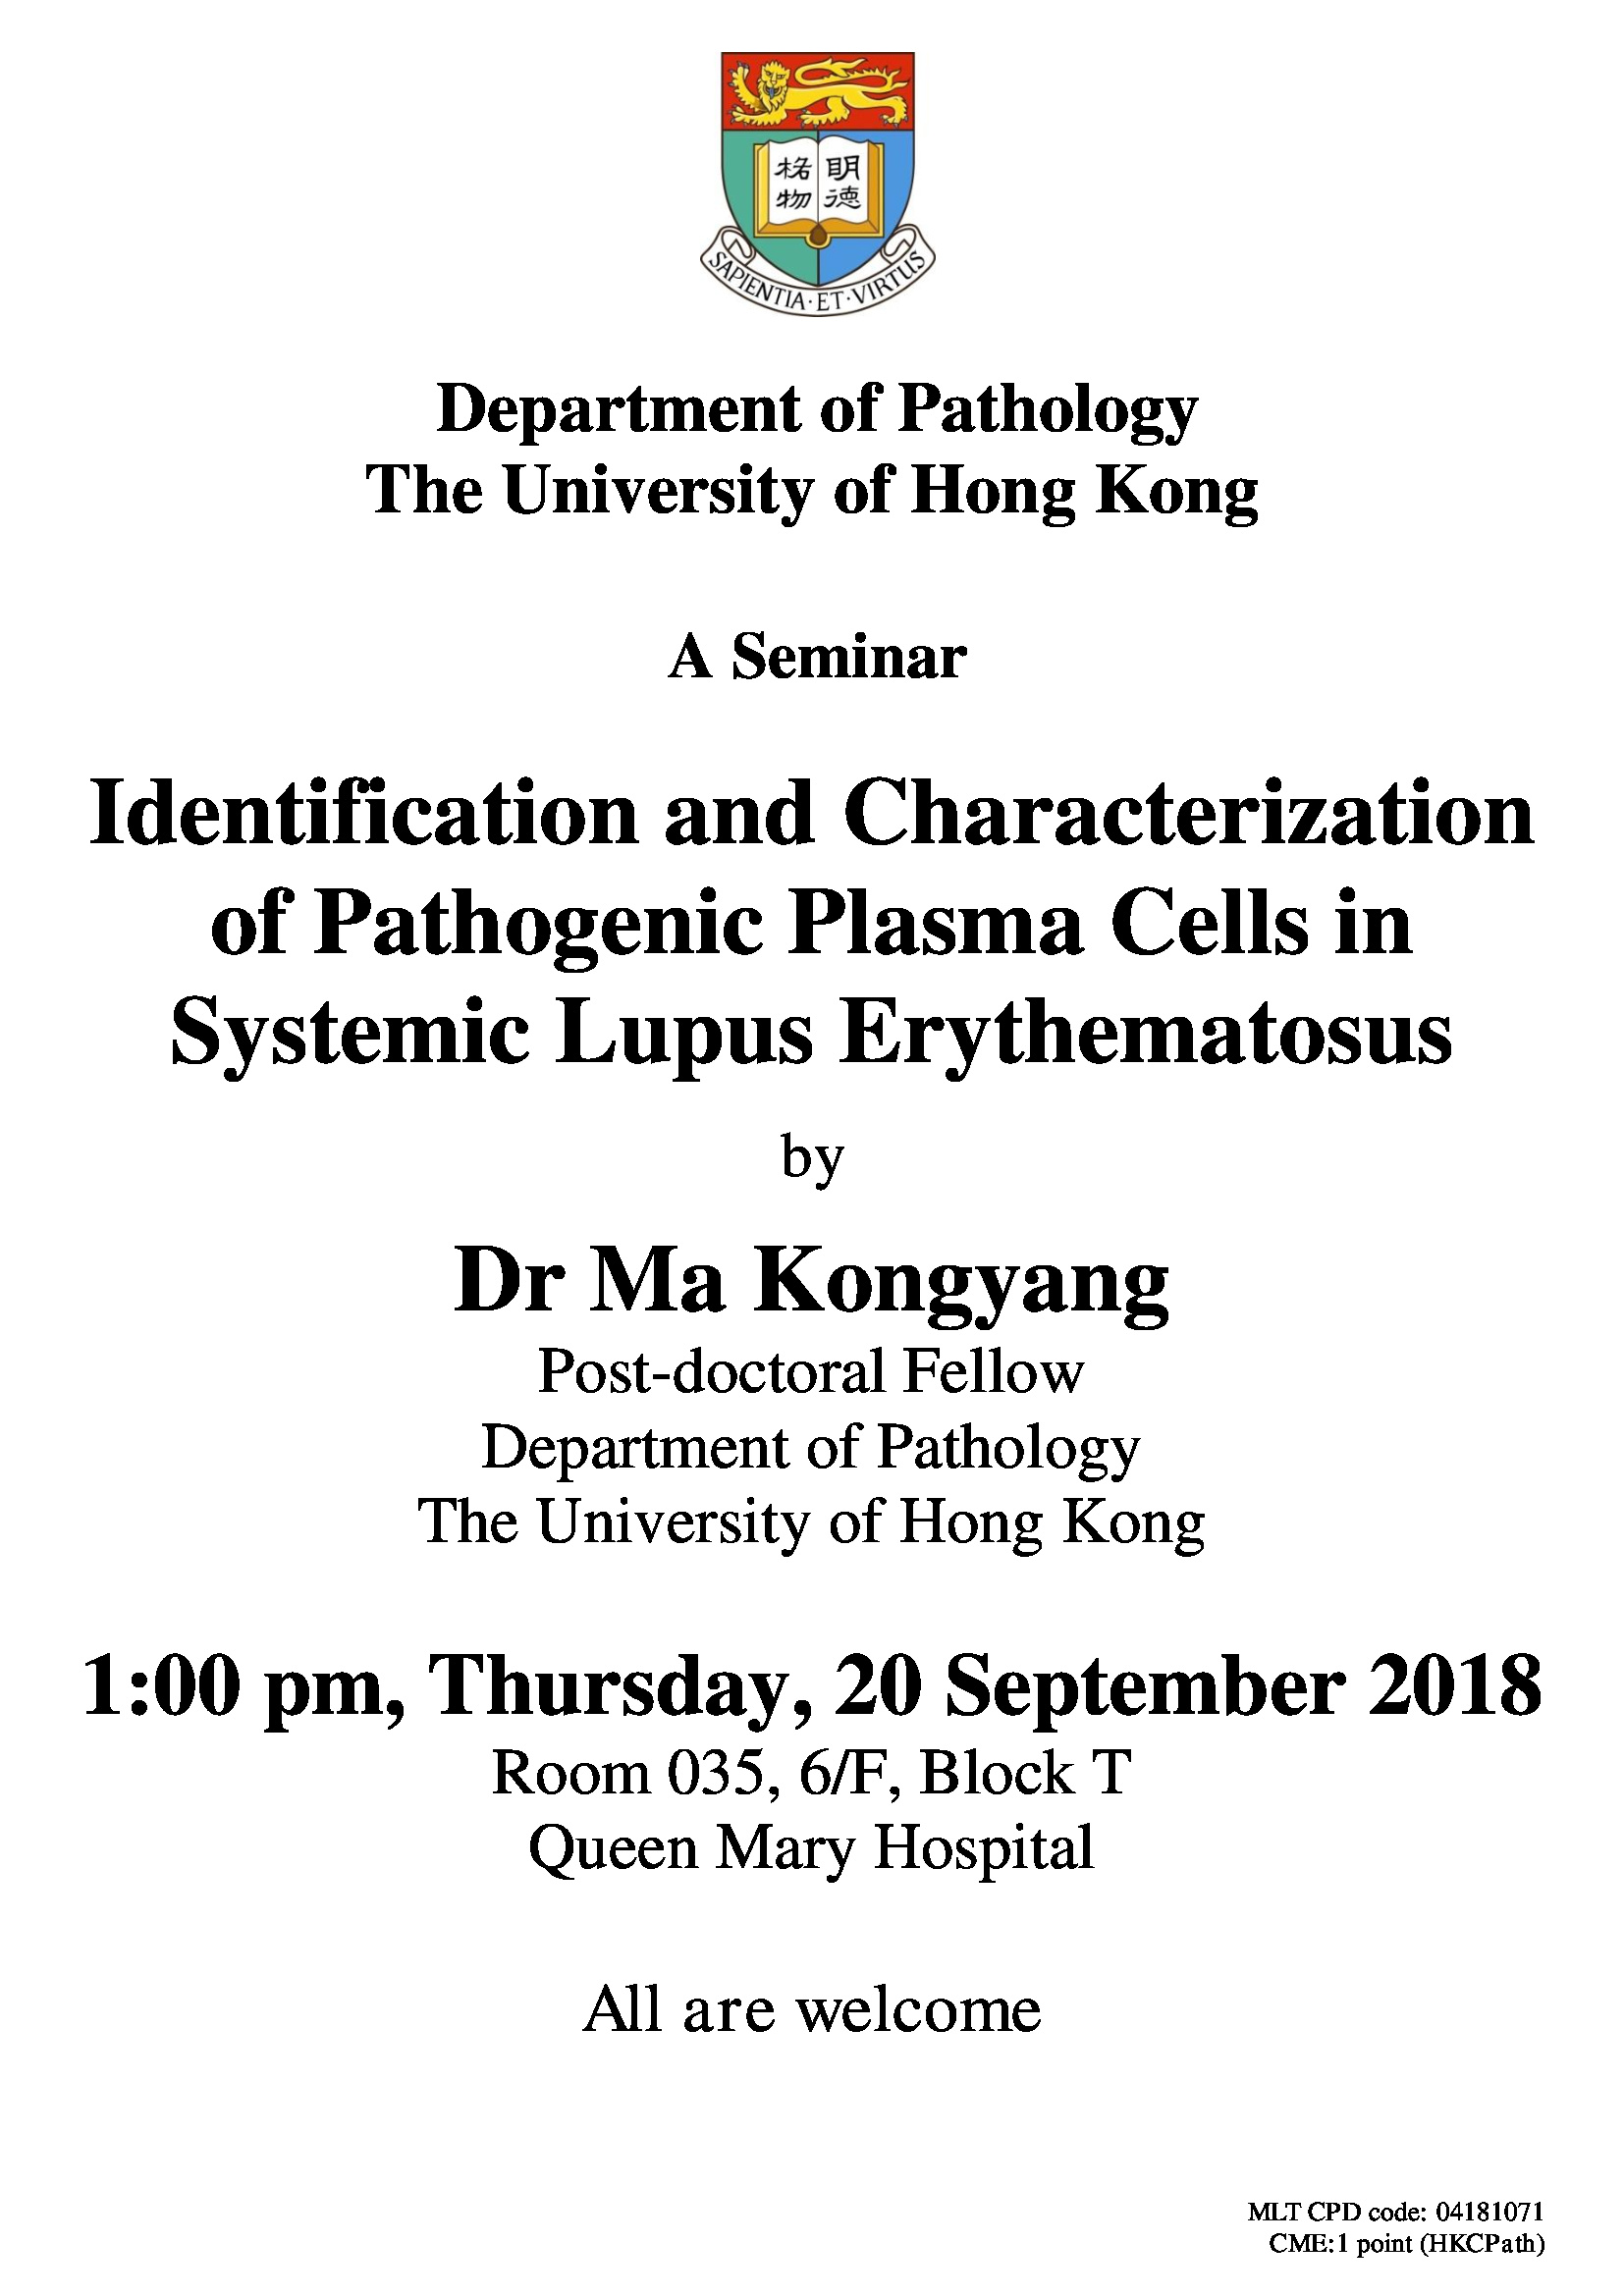 A Seminar by Dr Ma Kongyang